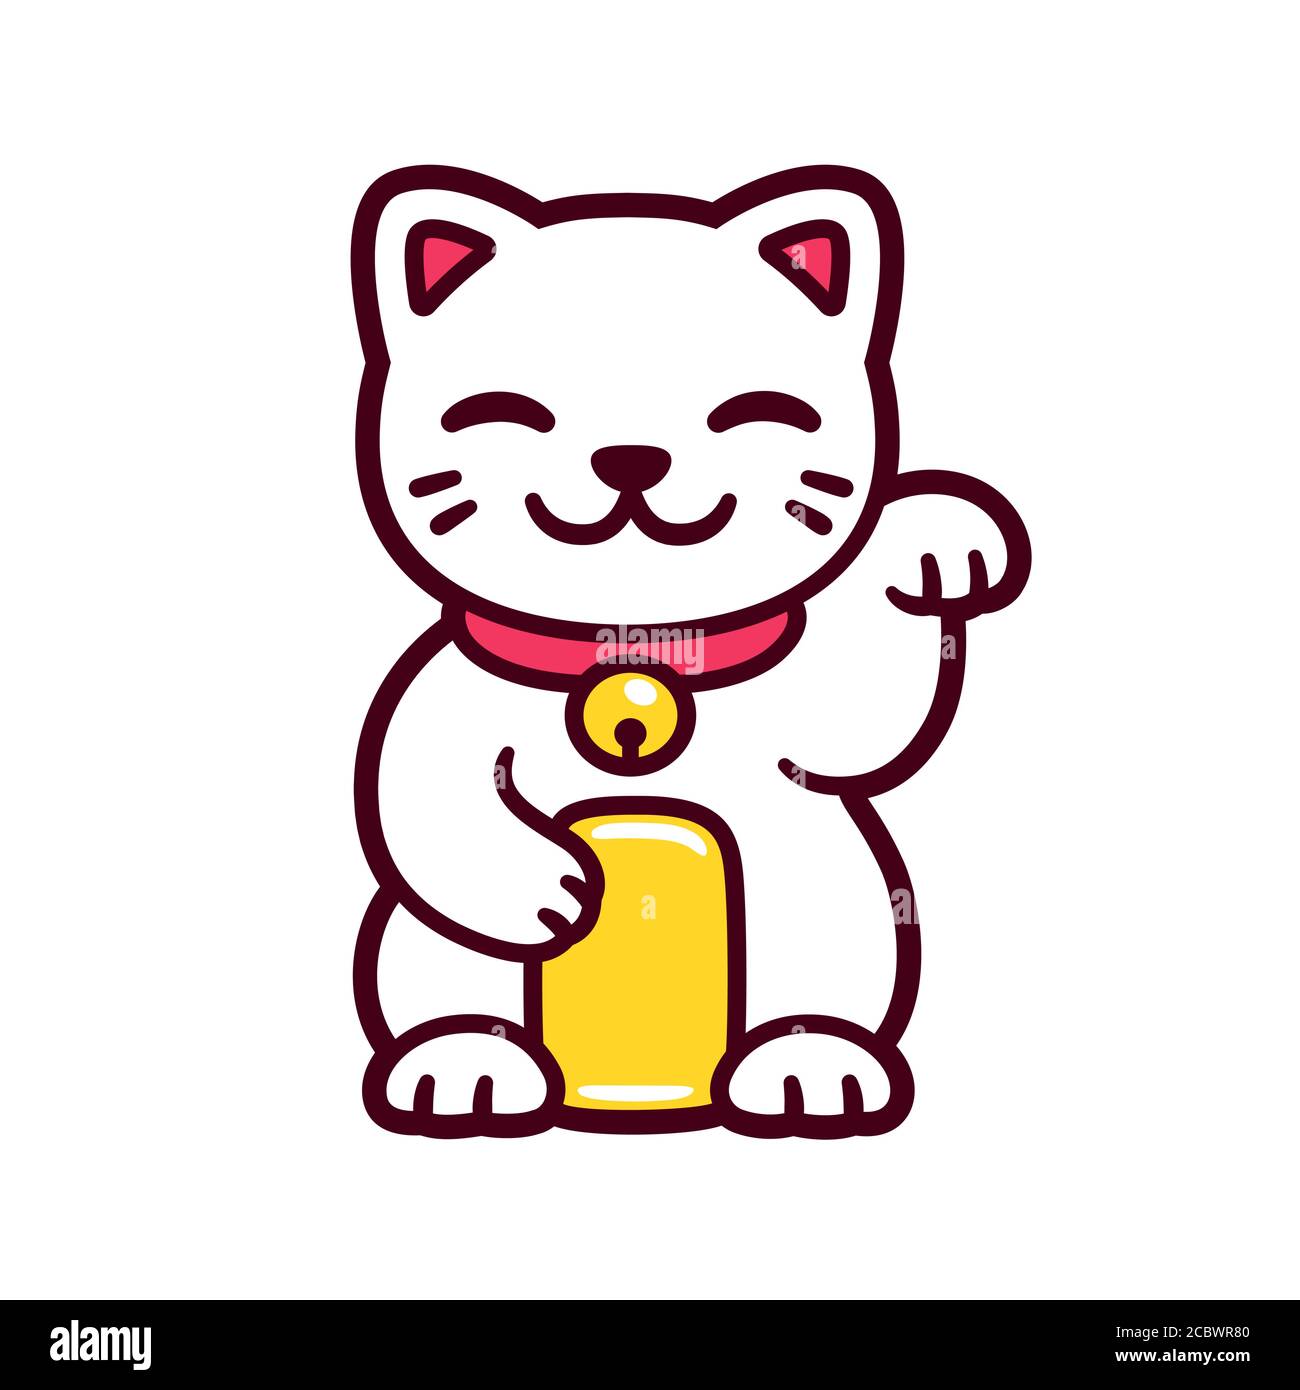 Carino cartone animato bianco Maneki Neko, gatto fortunato giapponese.  Buona fortuna Feng Shui kitty disegno. Illustrazione vettoriale isolata  Immagine e Vettoriale - Alamy